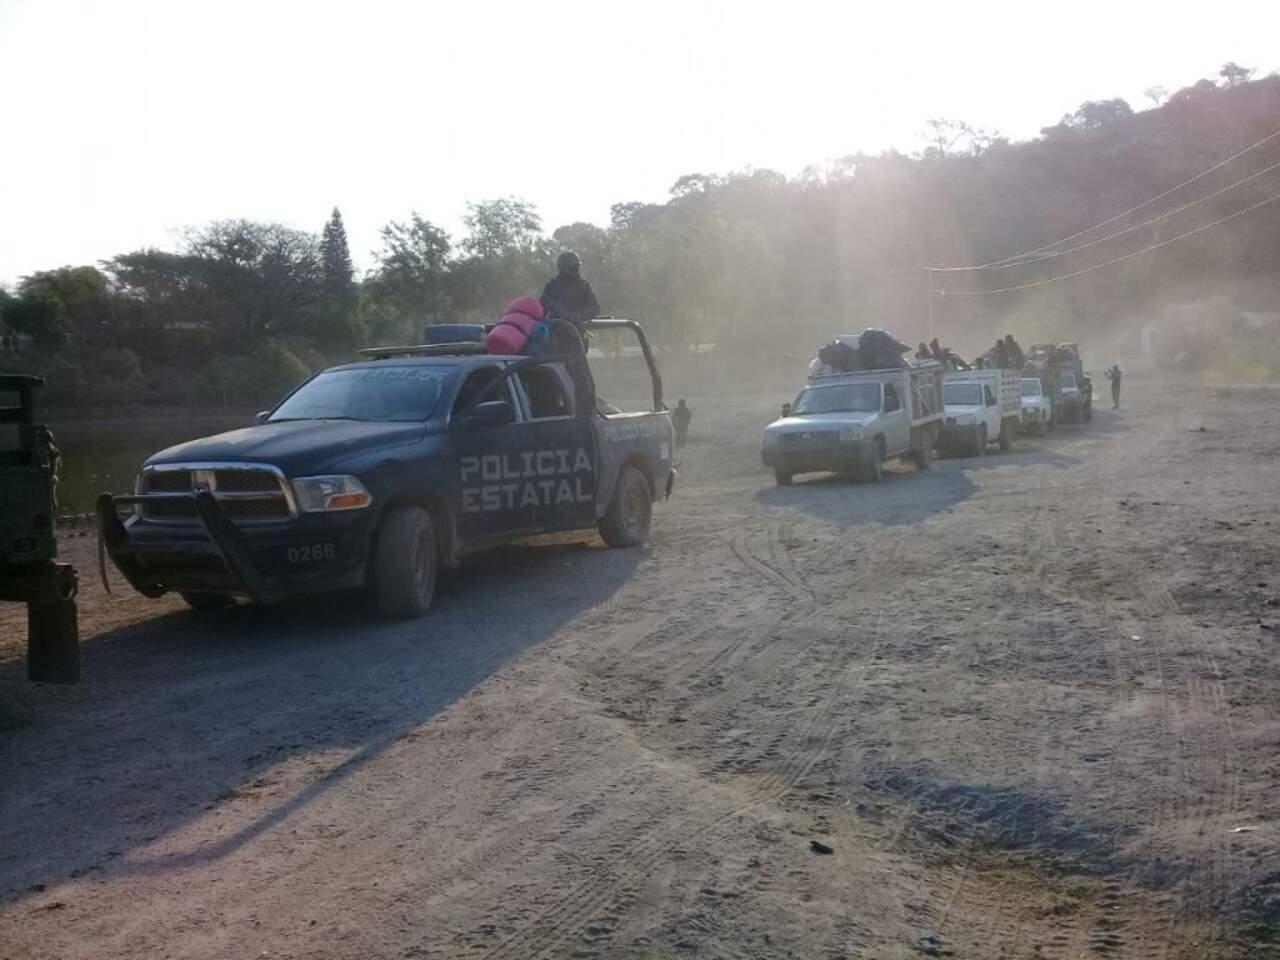 La caravana, integrada en su mayor parte por ancianos, mujeres y niños, salió de Laguna de Huayanalco, en el municipio de Totolapan, por temor a los narcos que operan en el área, dijo Roberto Álvarez, portavoz de seguridad de Guerrero, en un comunicado. (ESPECIAL)